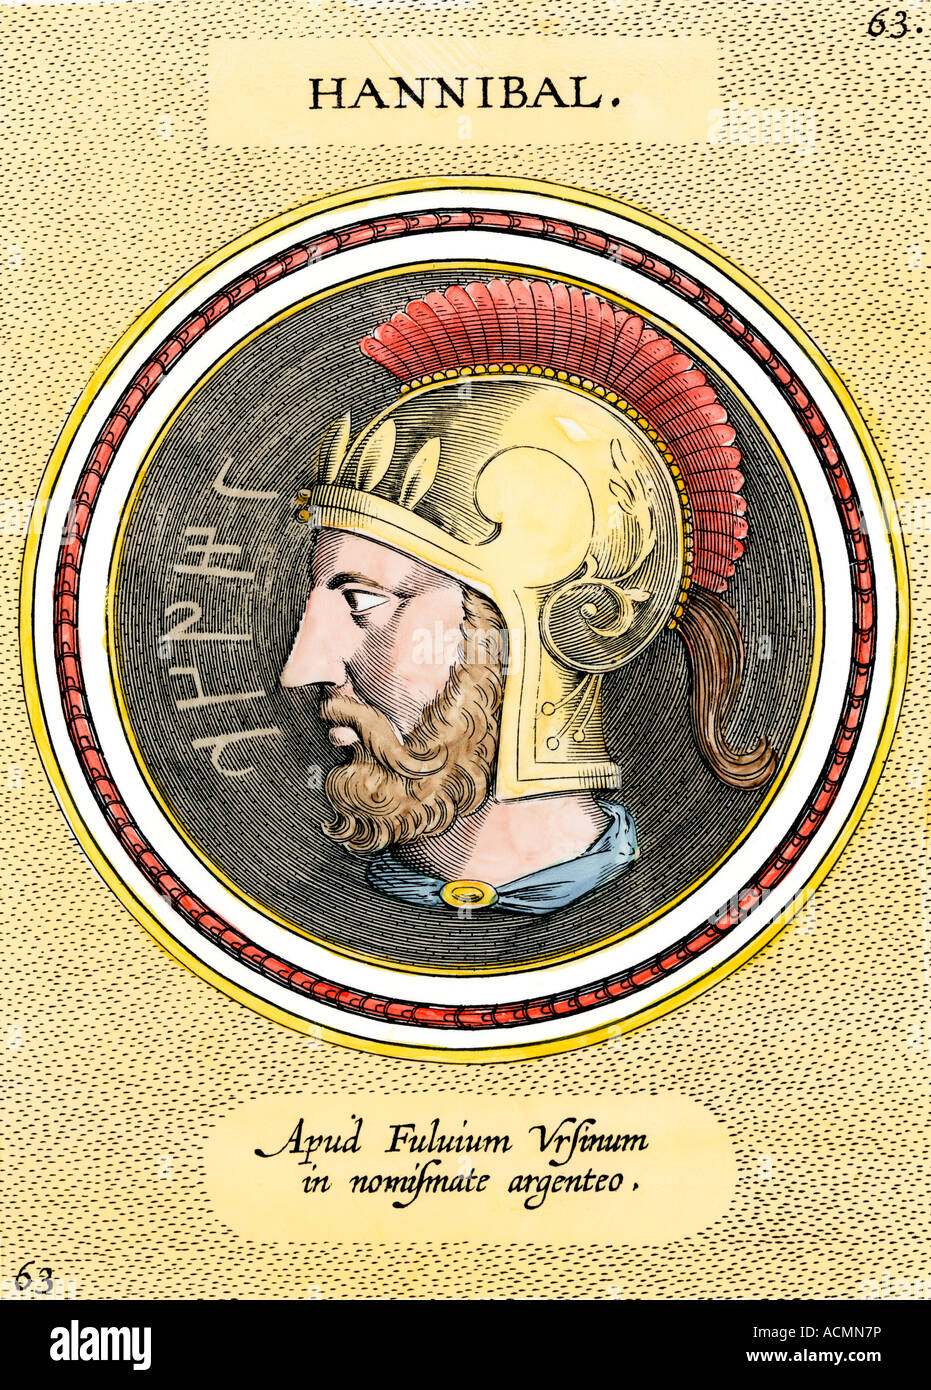 Der karthagische General Hannibal, die eindrangen, Italien und besiegte die antiken römischen Armee. Handcolorierte Radierung Stockfoto